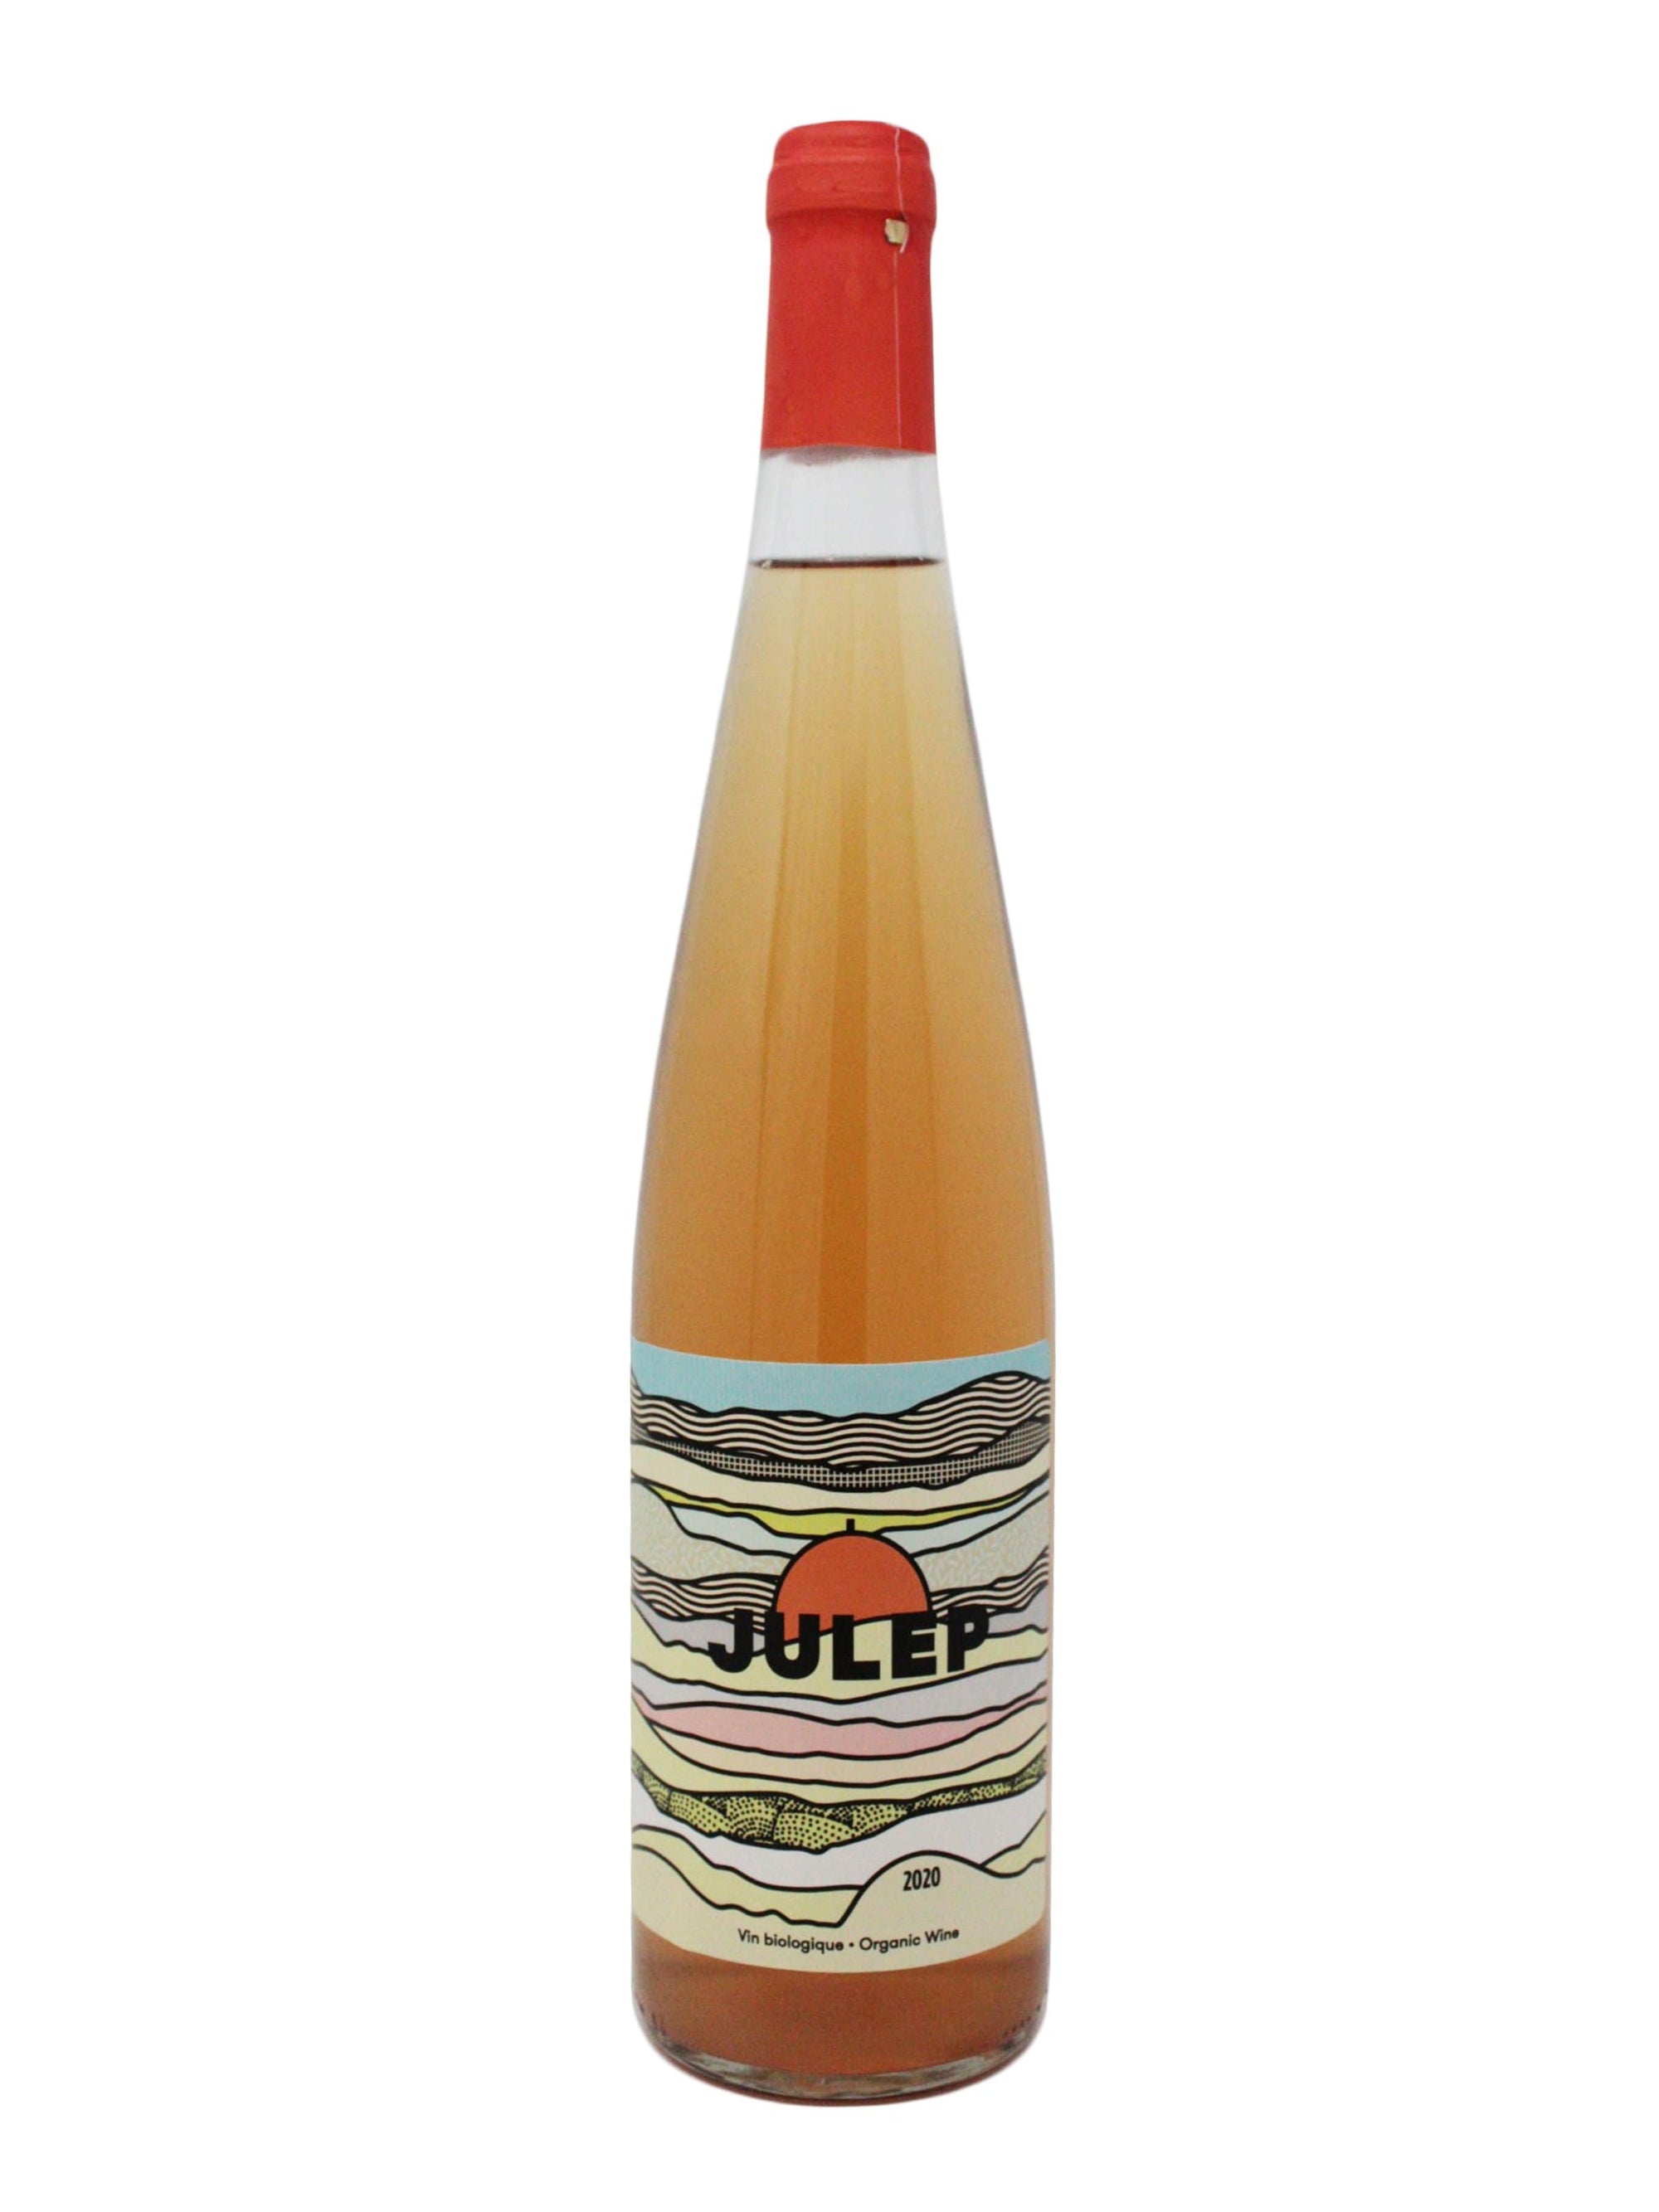 Vignoble Biologique Négondos vin JULEP - Vin orange du Vignoble biologique Négondos